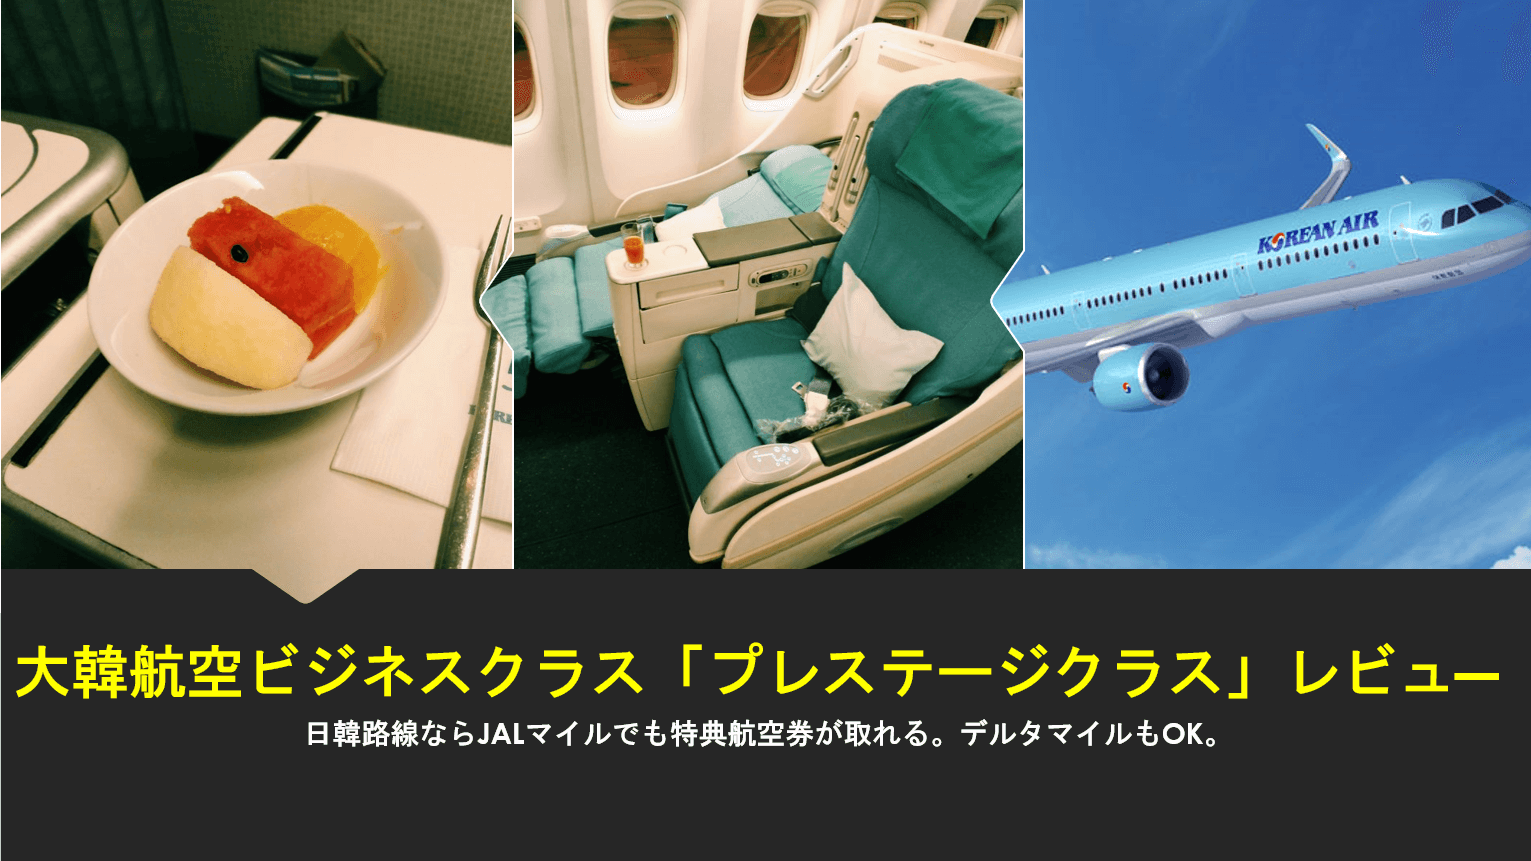 大韓航空の日本路線短距離ビジネスクラスレビュー 関空から仁川までb777 0に搭乗してみた すけすけのマイル乞食